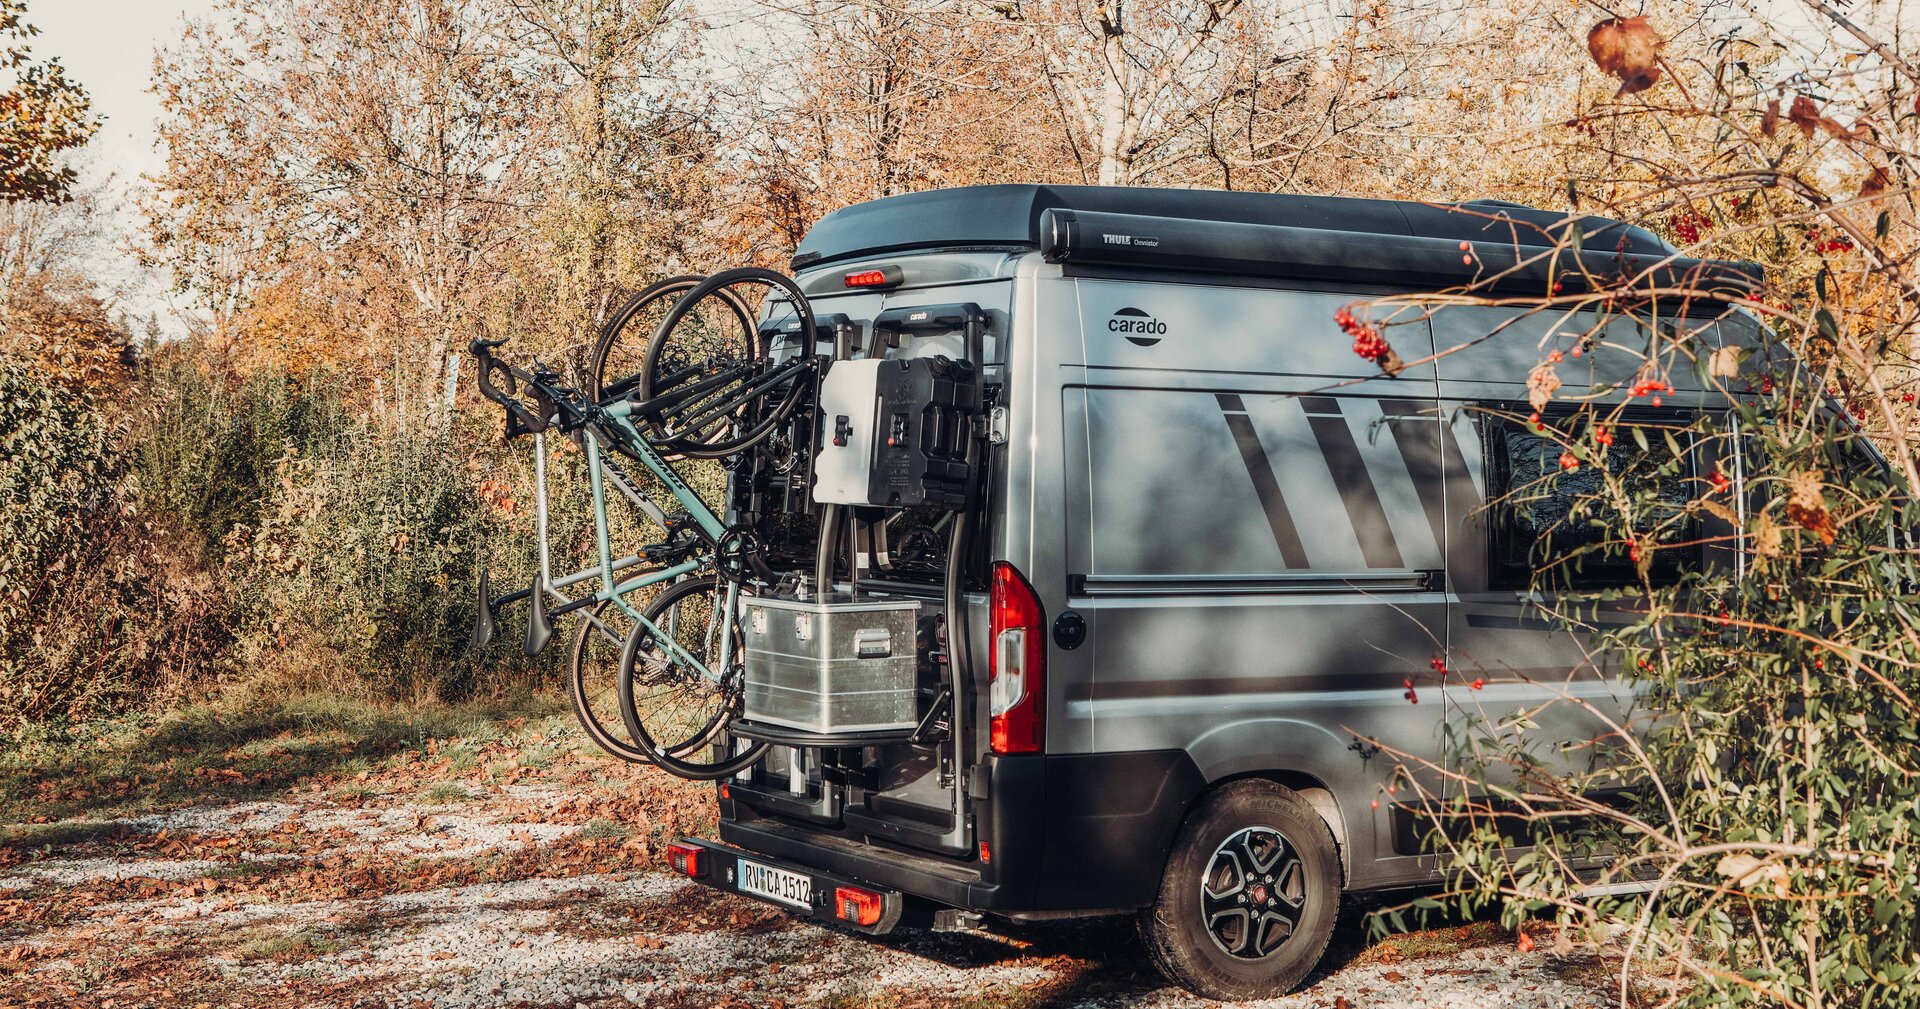 Accessoires Carado pour camping-cars et camper vans